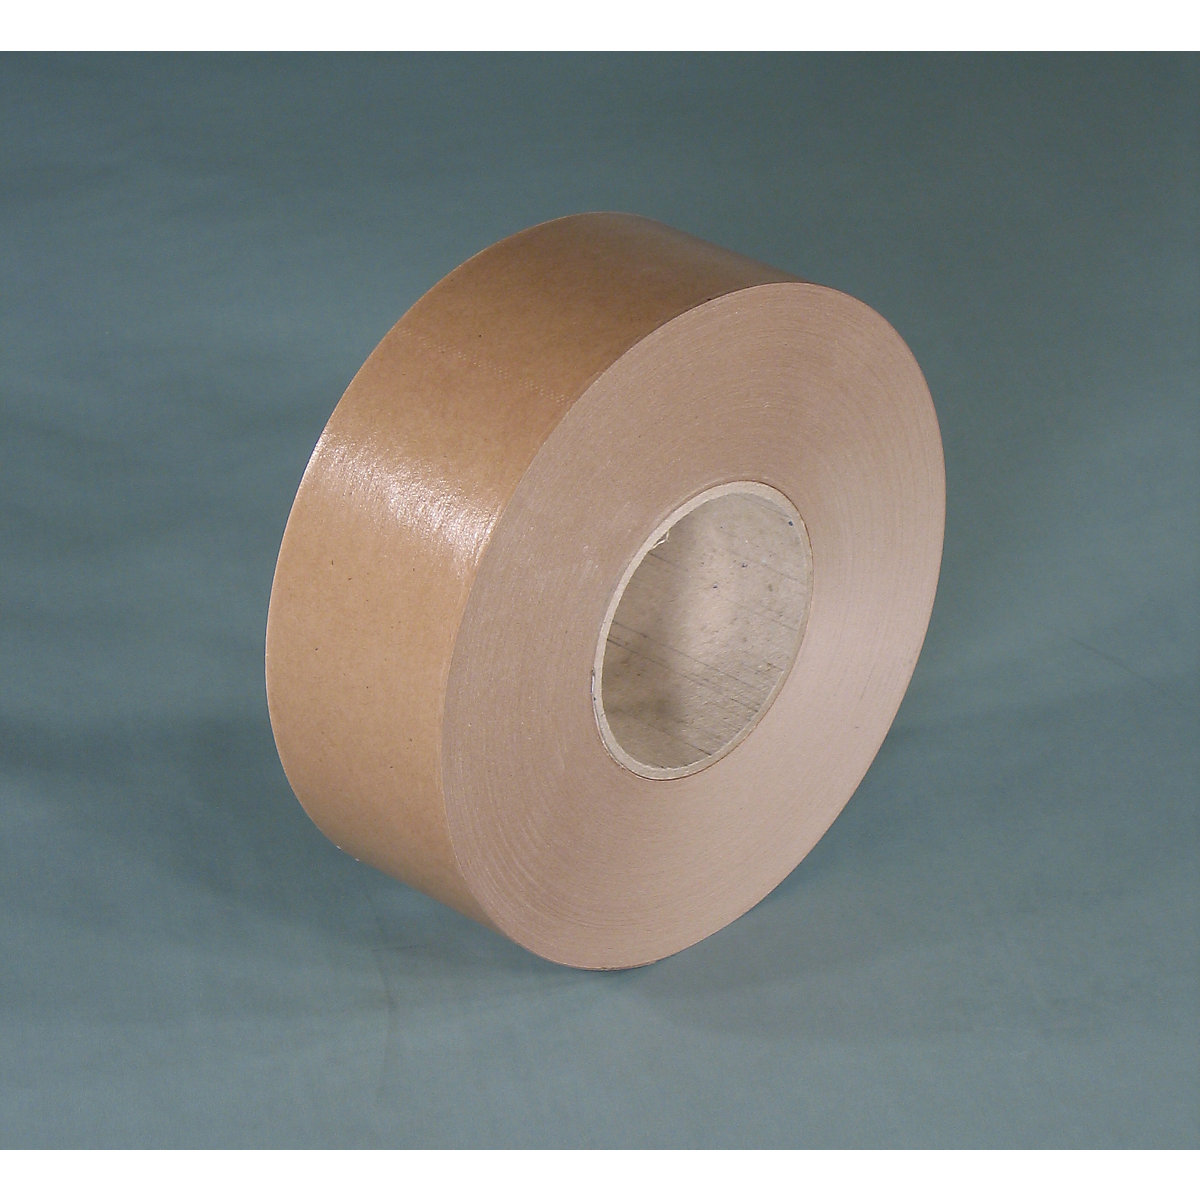 Gummed tape – eurokraft basic, basic model, pack of 12 rolls, brown, tape width 60 mm-2